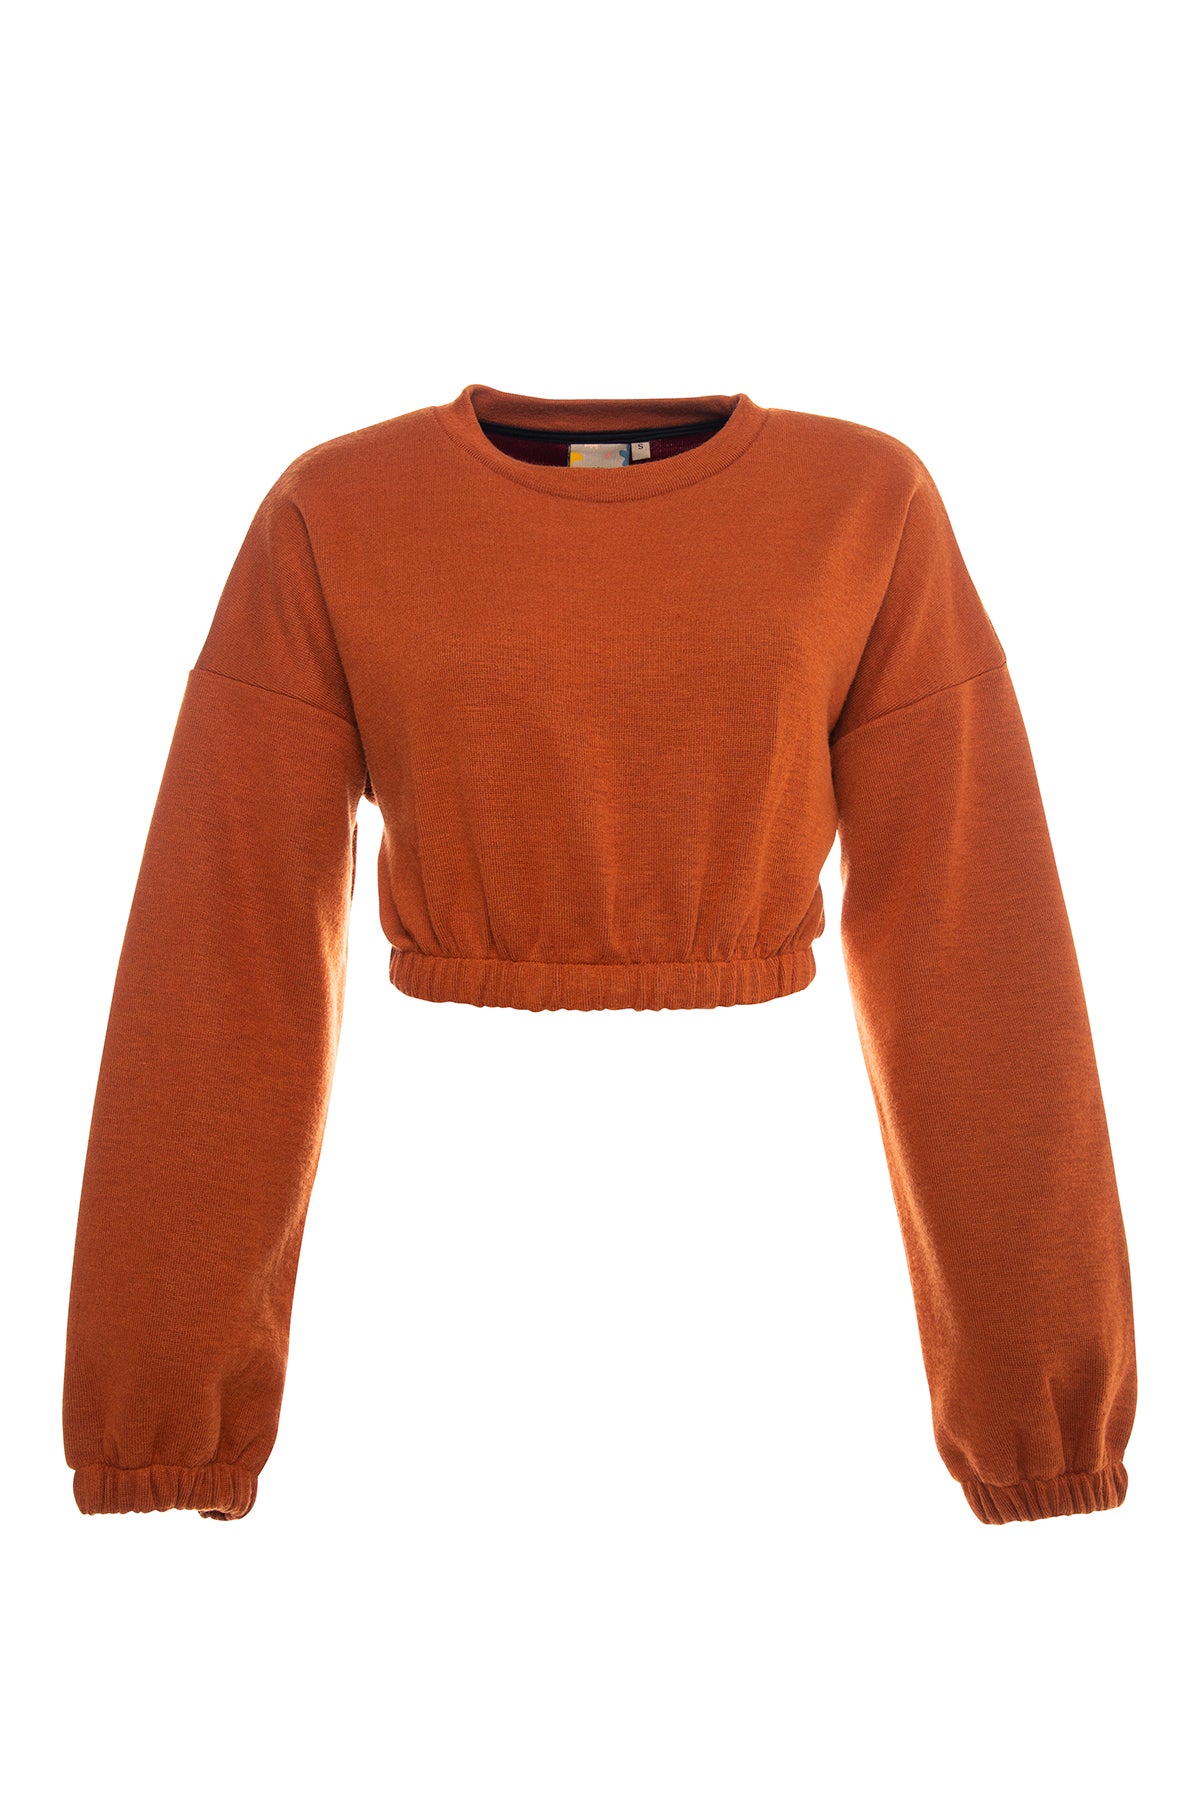 Short elastic waist crop top sweatshirt in tiger orange.